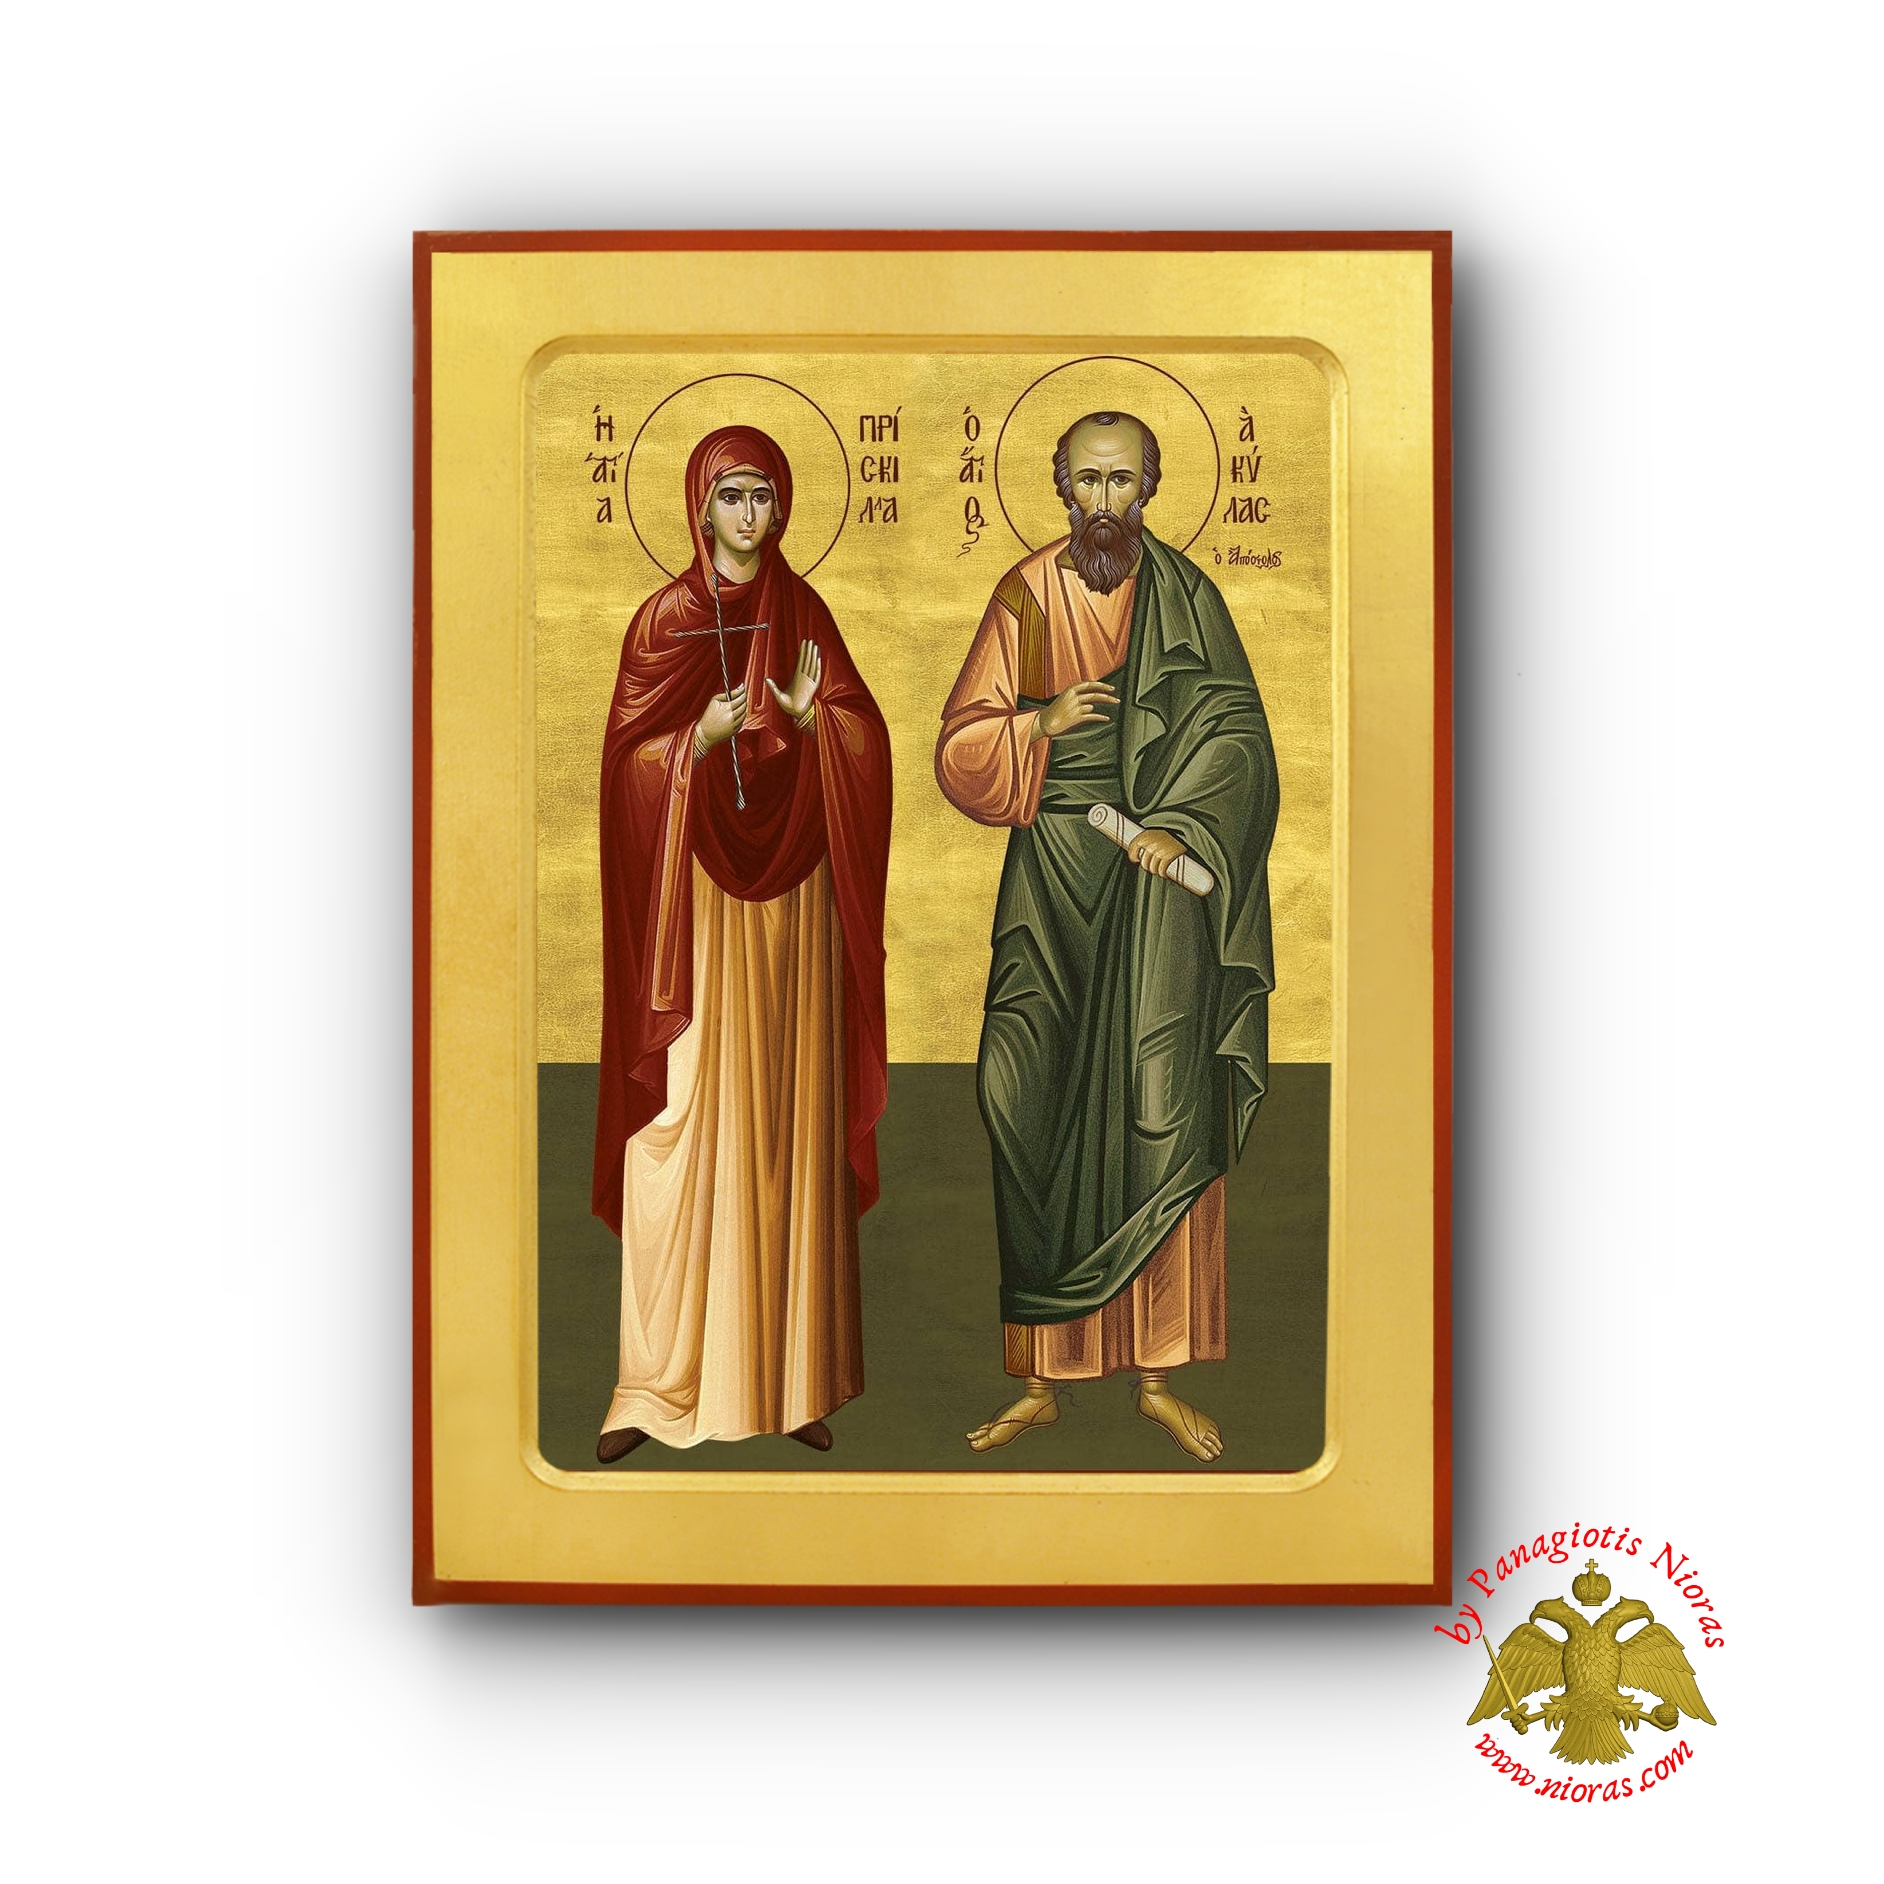 Άγιοι Αποστολοι Ακύλας και Πρισκίλλα Ξύλινη Βυζαντινή Εικόνα